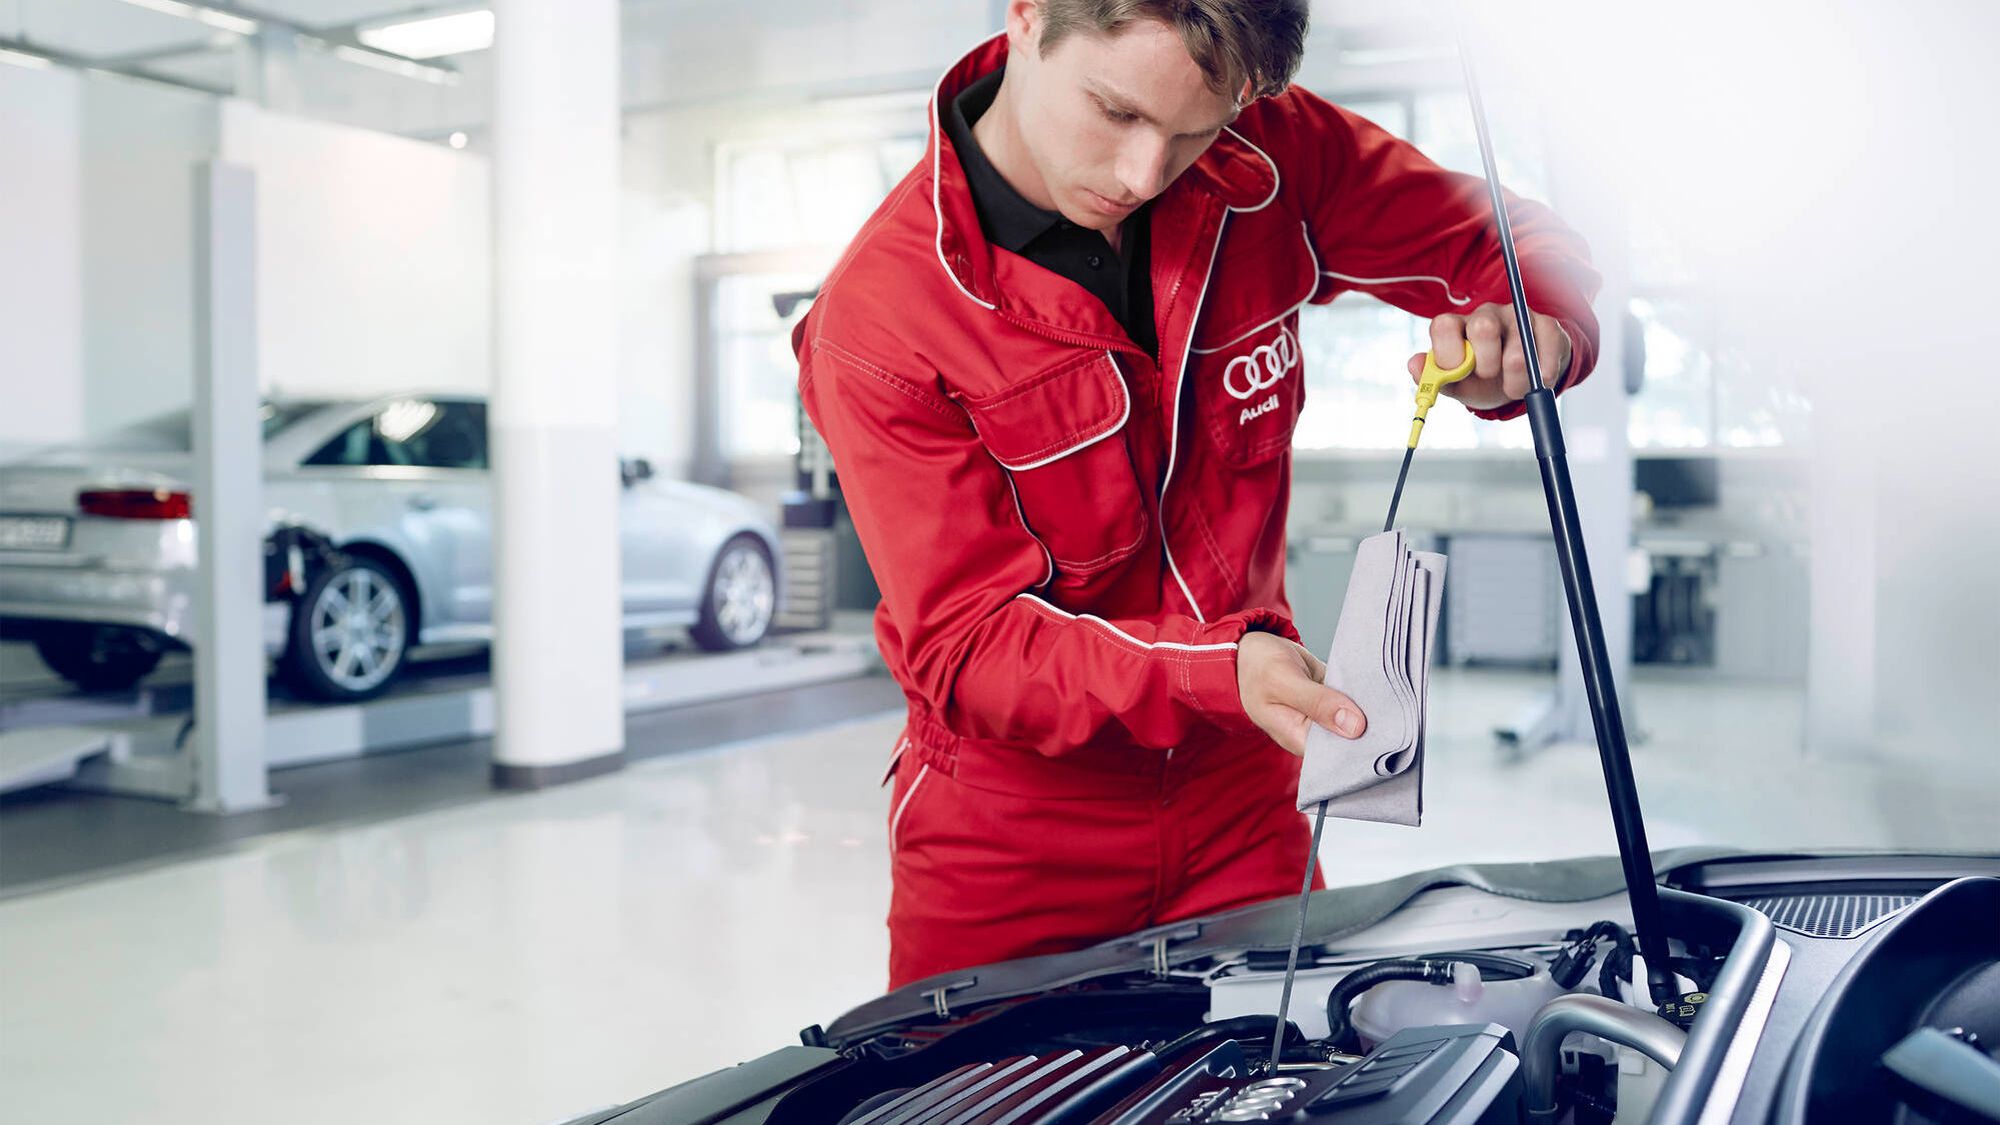 Zu sehen ist ein Mechaniker beim Ölstand Prüfen eines Audi Fahrzeuges